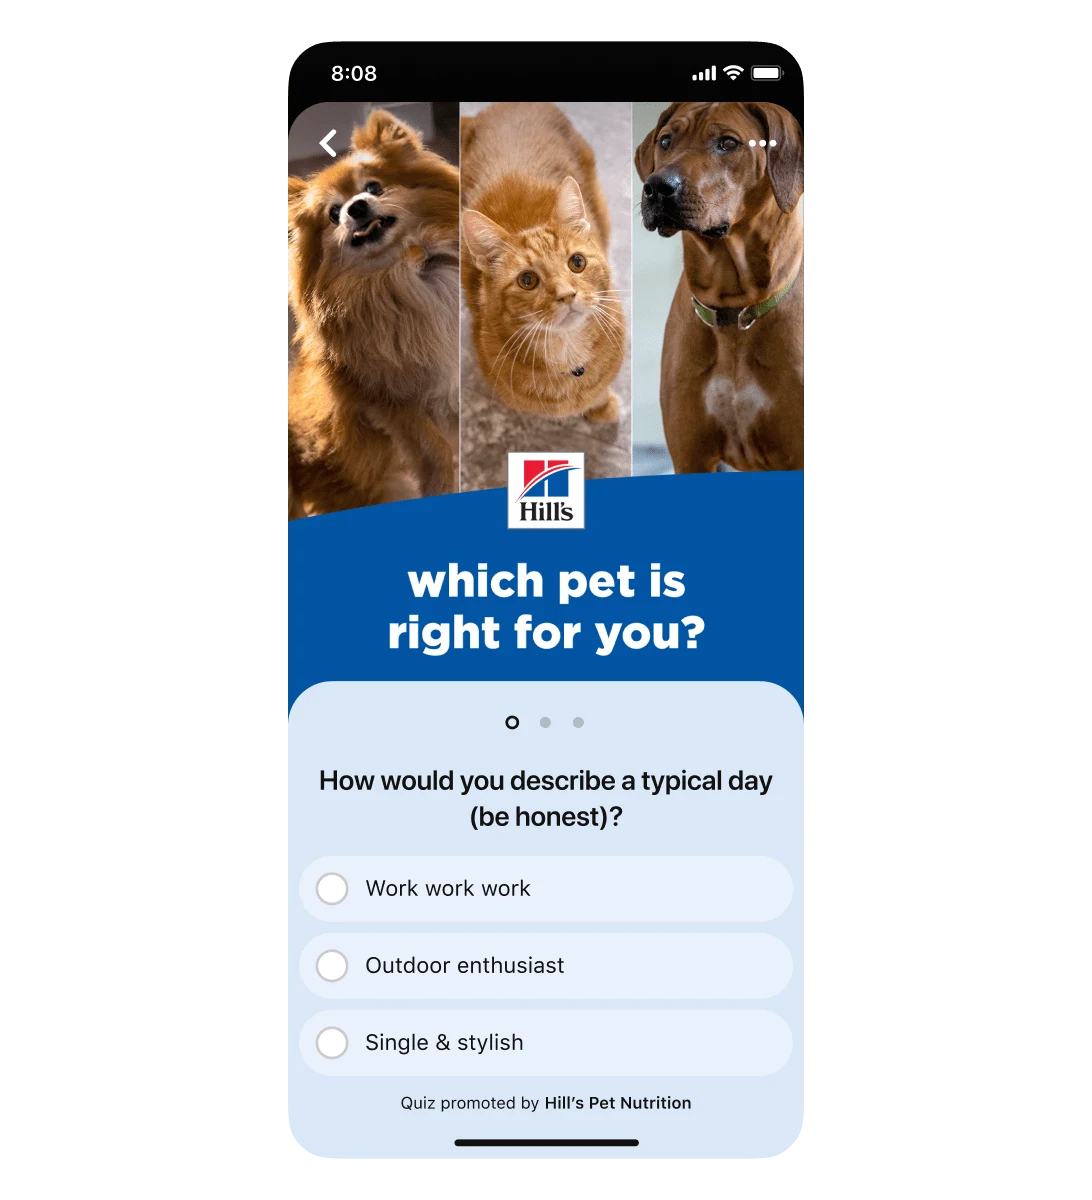 Мобільне подання оголошення Pinterest з опитуванням для Hill's Pet Nutrition. Перше запитання: "Як би ви описали свій звичайний день (тільки чесно)?". Три варіанти відповідей: "Нічого, крім роботи", "Багато прогулянок" і "Самотній, але стильний".